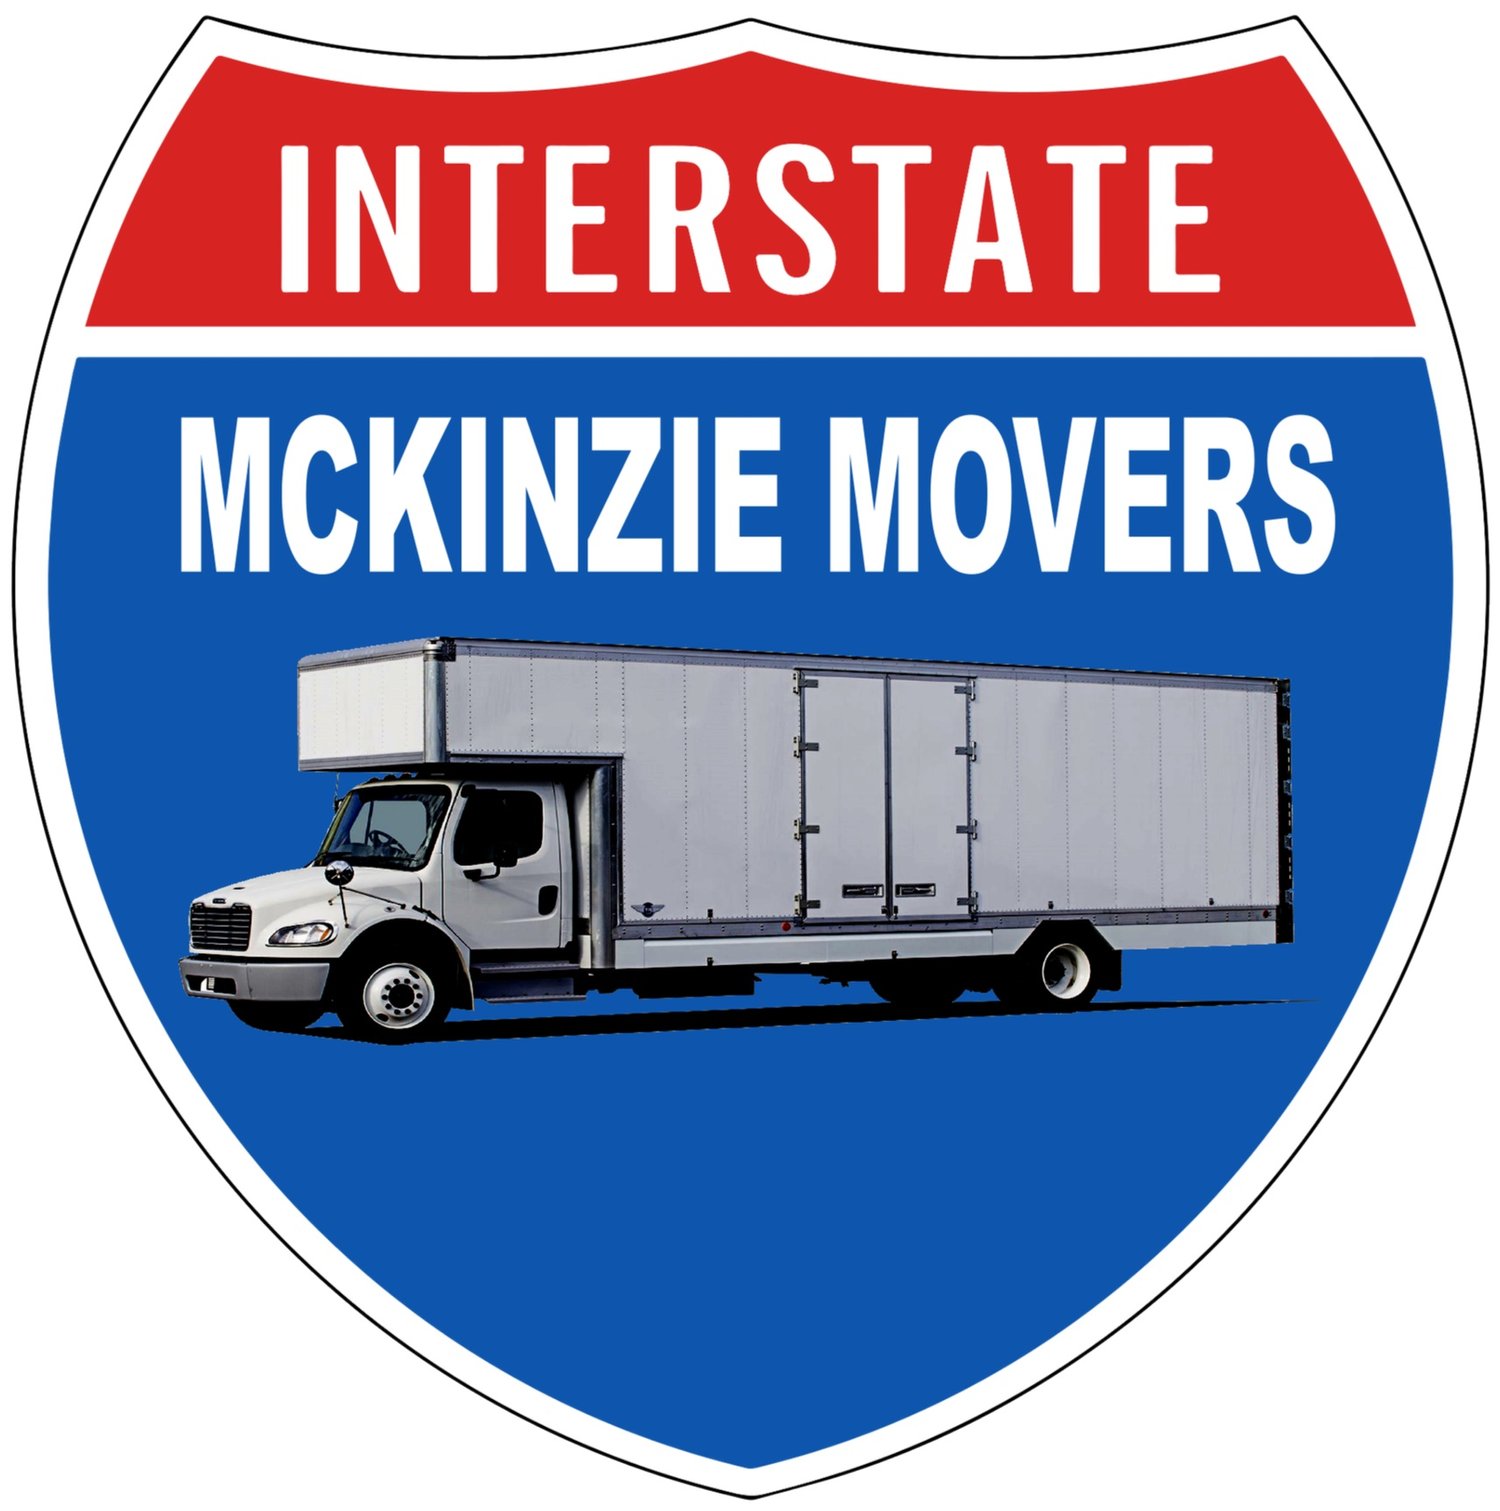 Interstate McKinzie Movers LLC